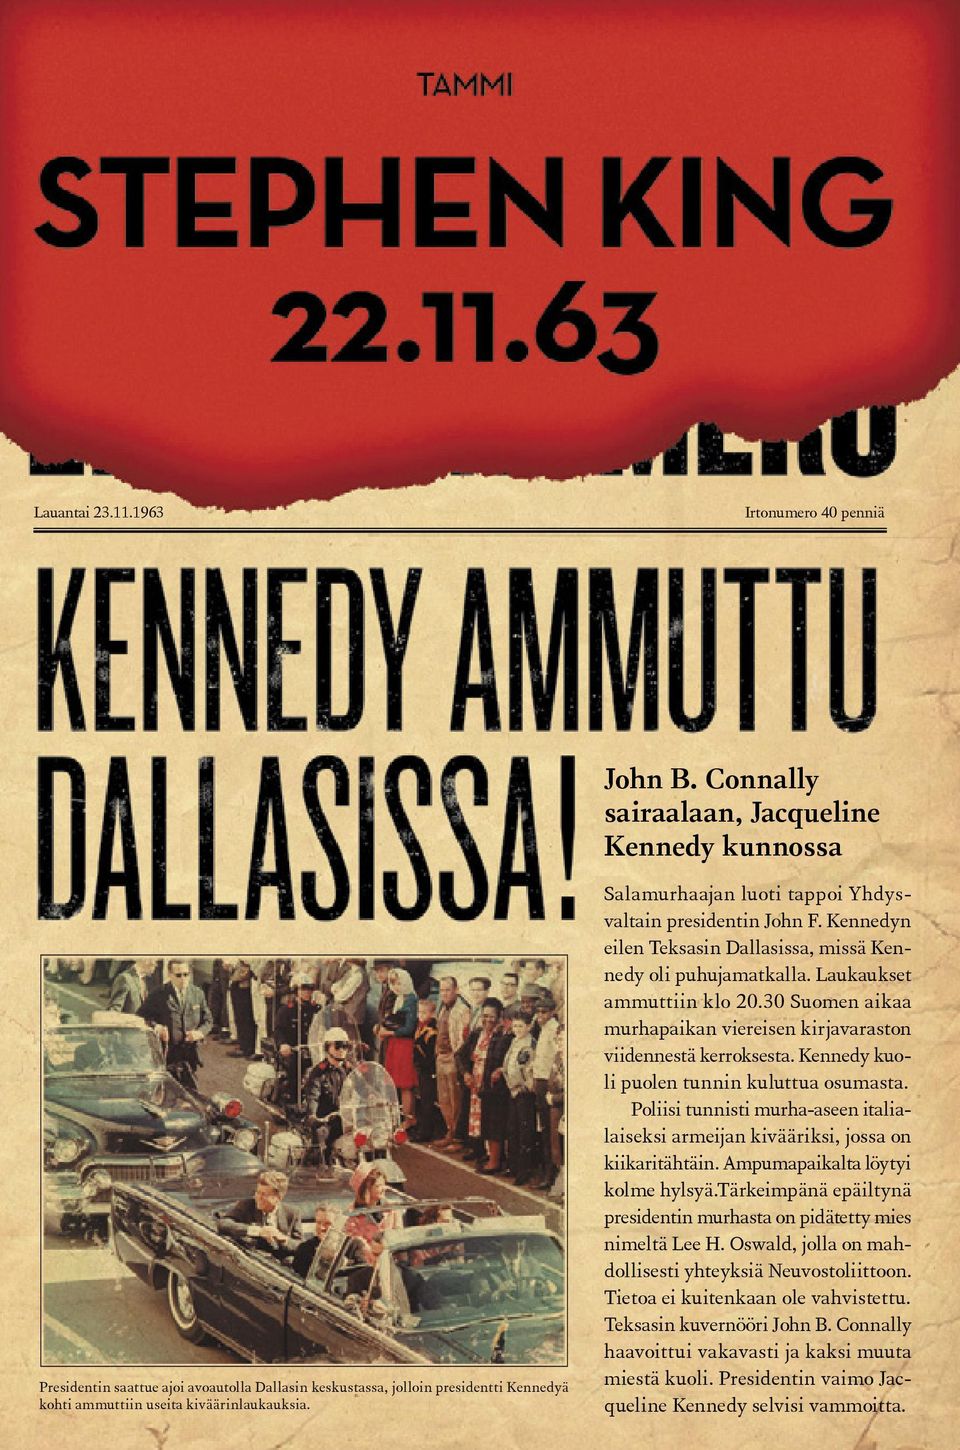 Salamurhaajan luoti tappoi Yhdysvaltain presidentin John F. Kennedyn eilen Teksasin Dallasissa, missä Kennedy oli puhujamatkalla. Laukaukset ammuttiin klo 20.